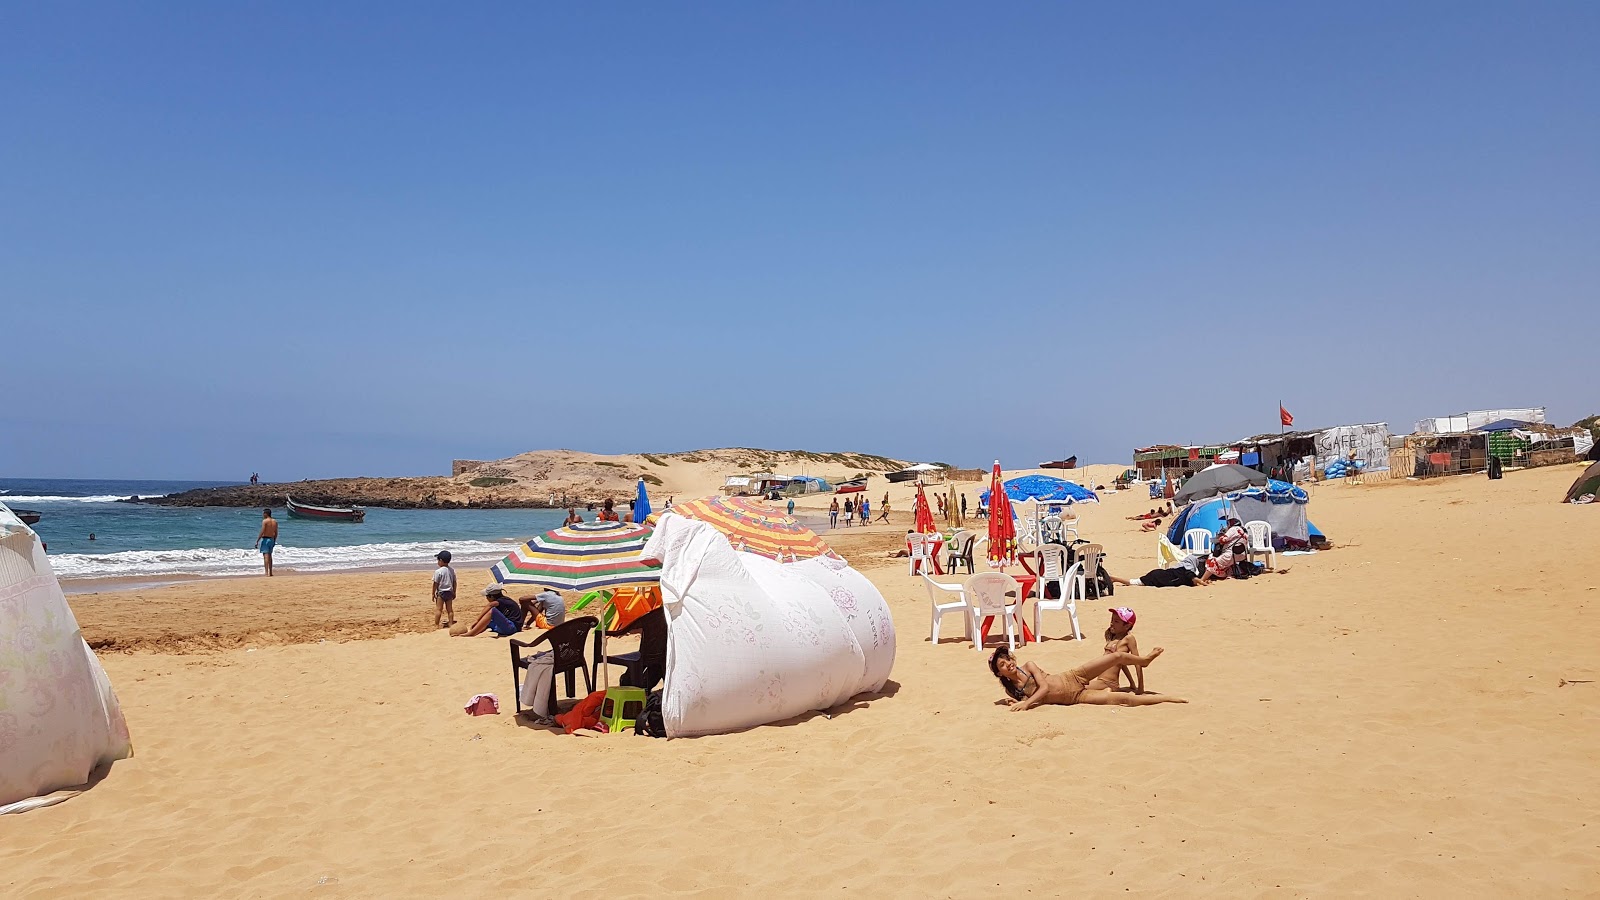 Sidi Belkheir Beach shaty sydy balkhyr'in fotoğrafı doğal alan içinde bulunmaktadır